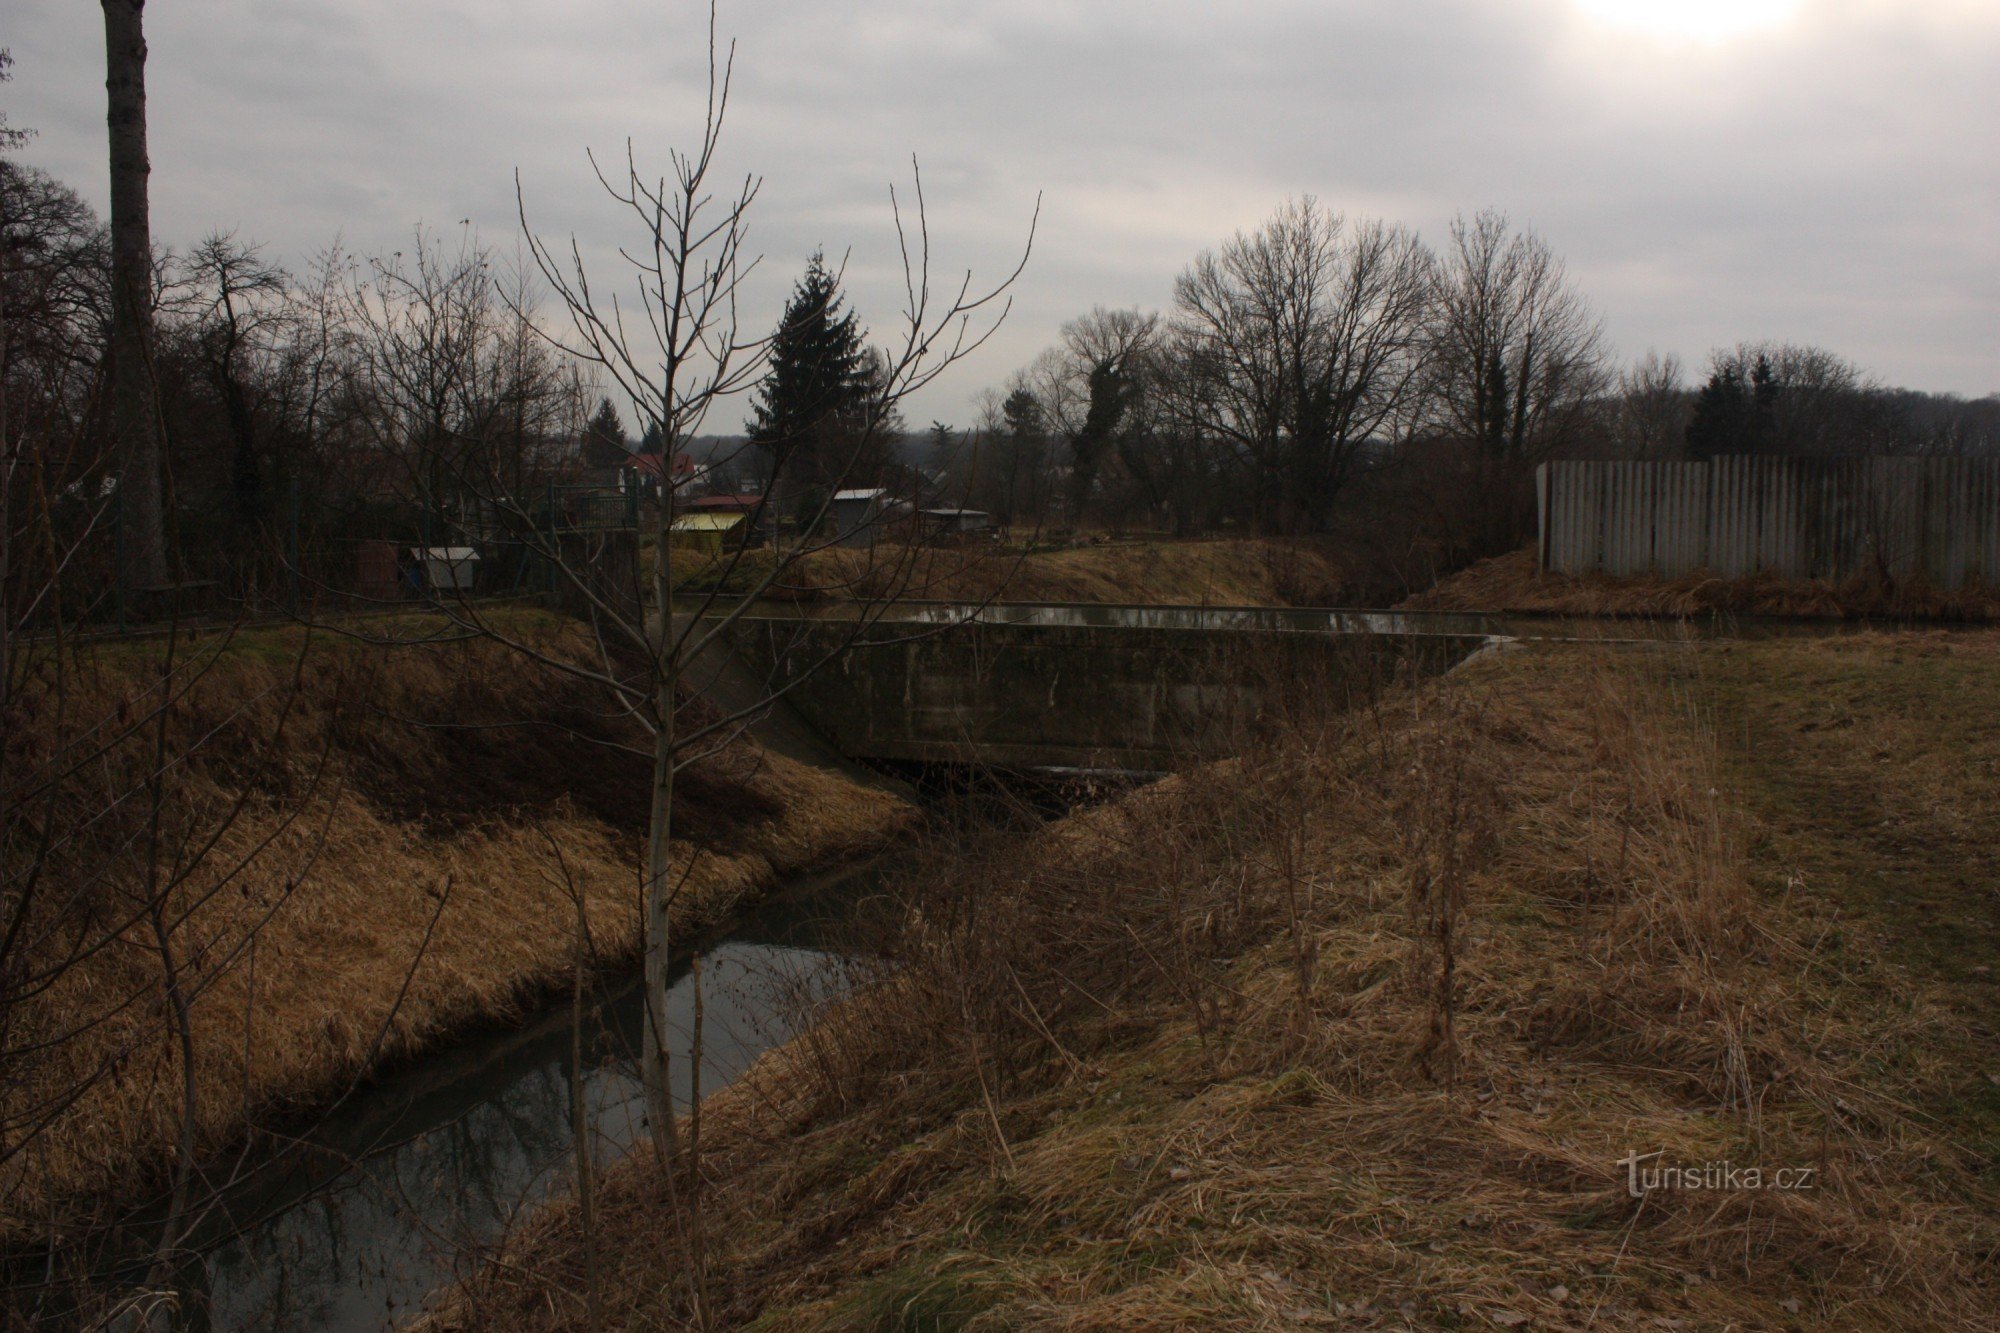 Traversare în afara nivelului a pârâului Svodnice cu o unitate de moară